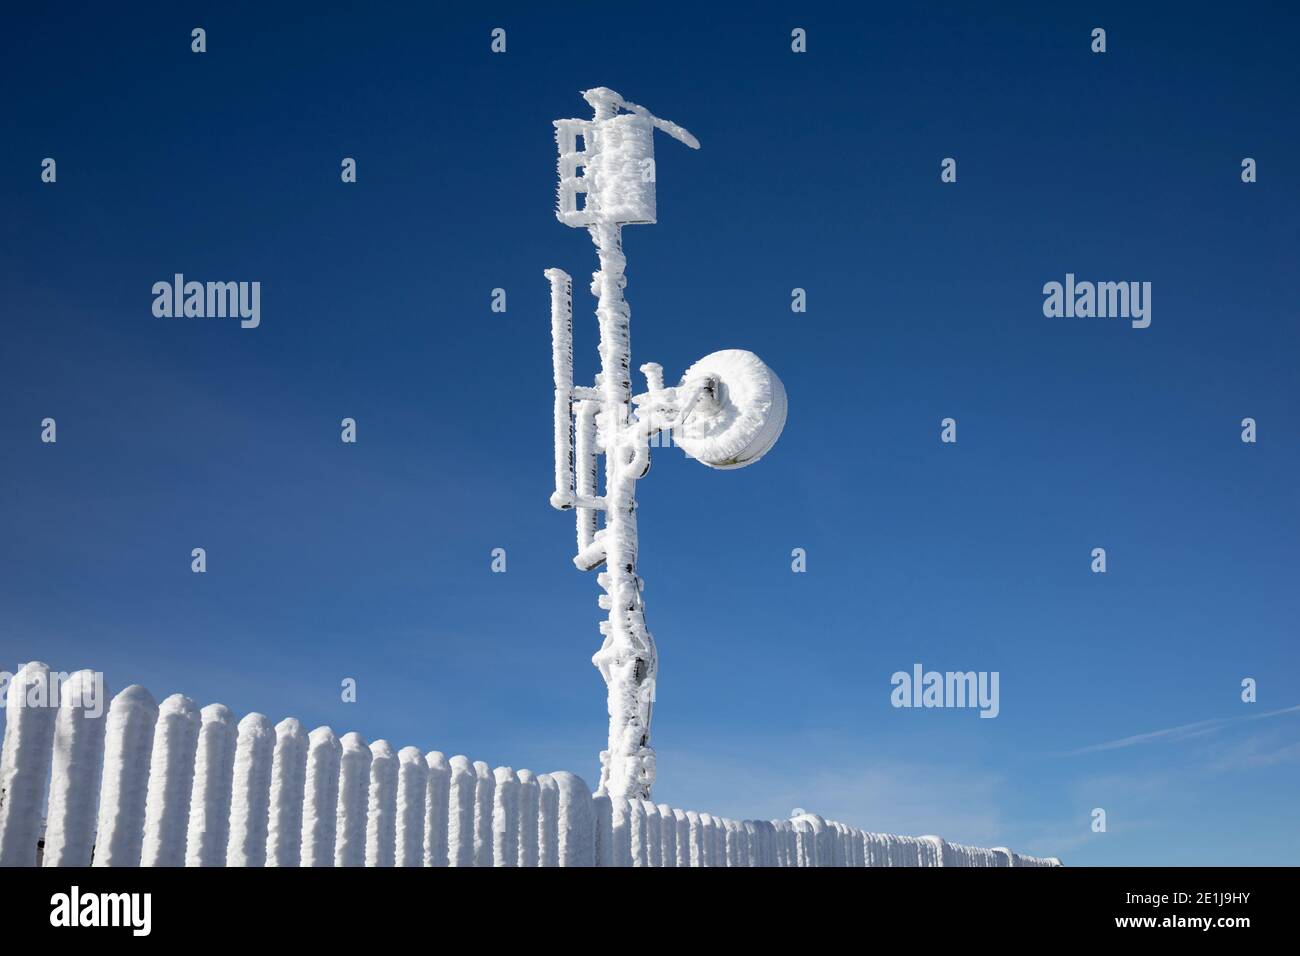 Meteorologischer Turm mit Messgeräten, Satellitenschüssel, Antenne. Gerät wird von gefrorenem Schnee, Eis und Reim in kalten und eiskalten Winte bedeckt Stockfoto